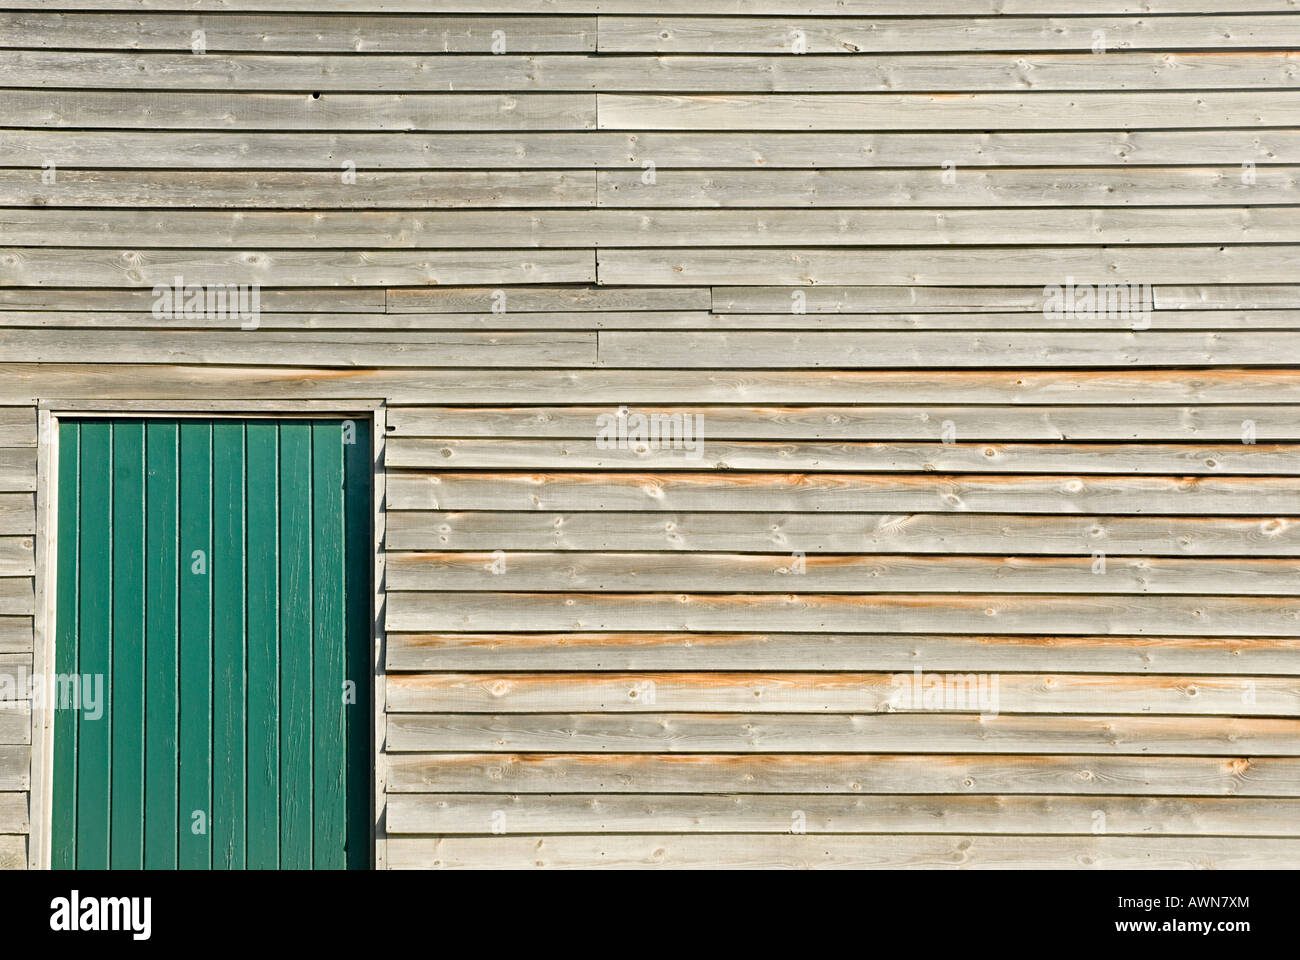 Wooden building with door Stock Photo